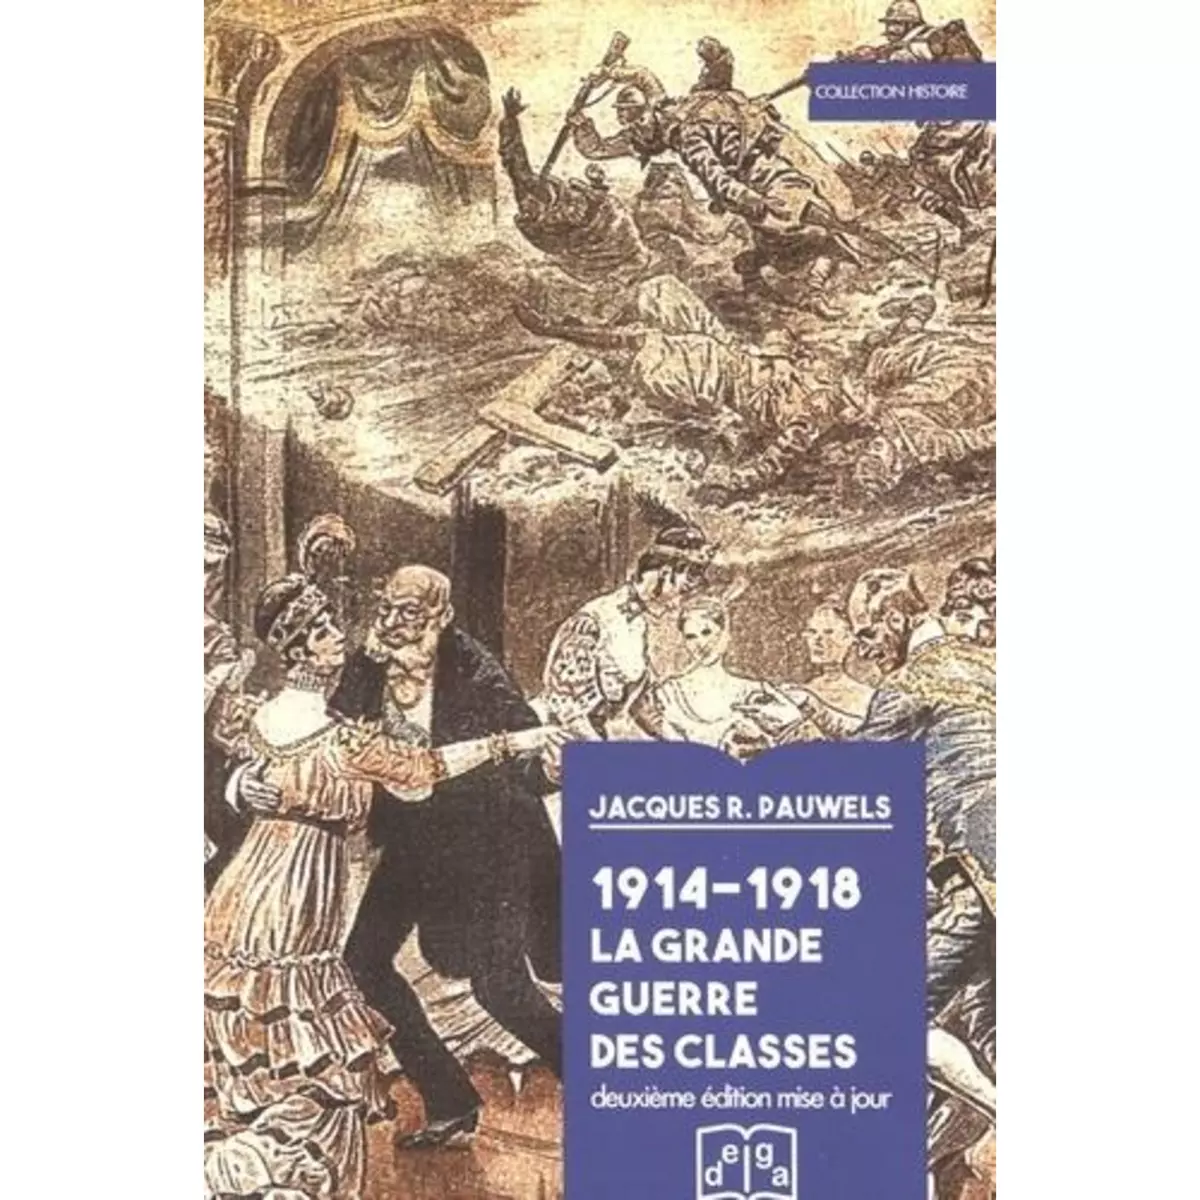  1914-1918 LA GRANDE GUERRE DES CLASSES. 2E EDITION REVUE ET CORRIGEE, Pauwels Jacques